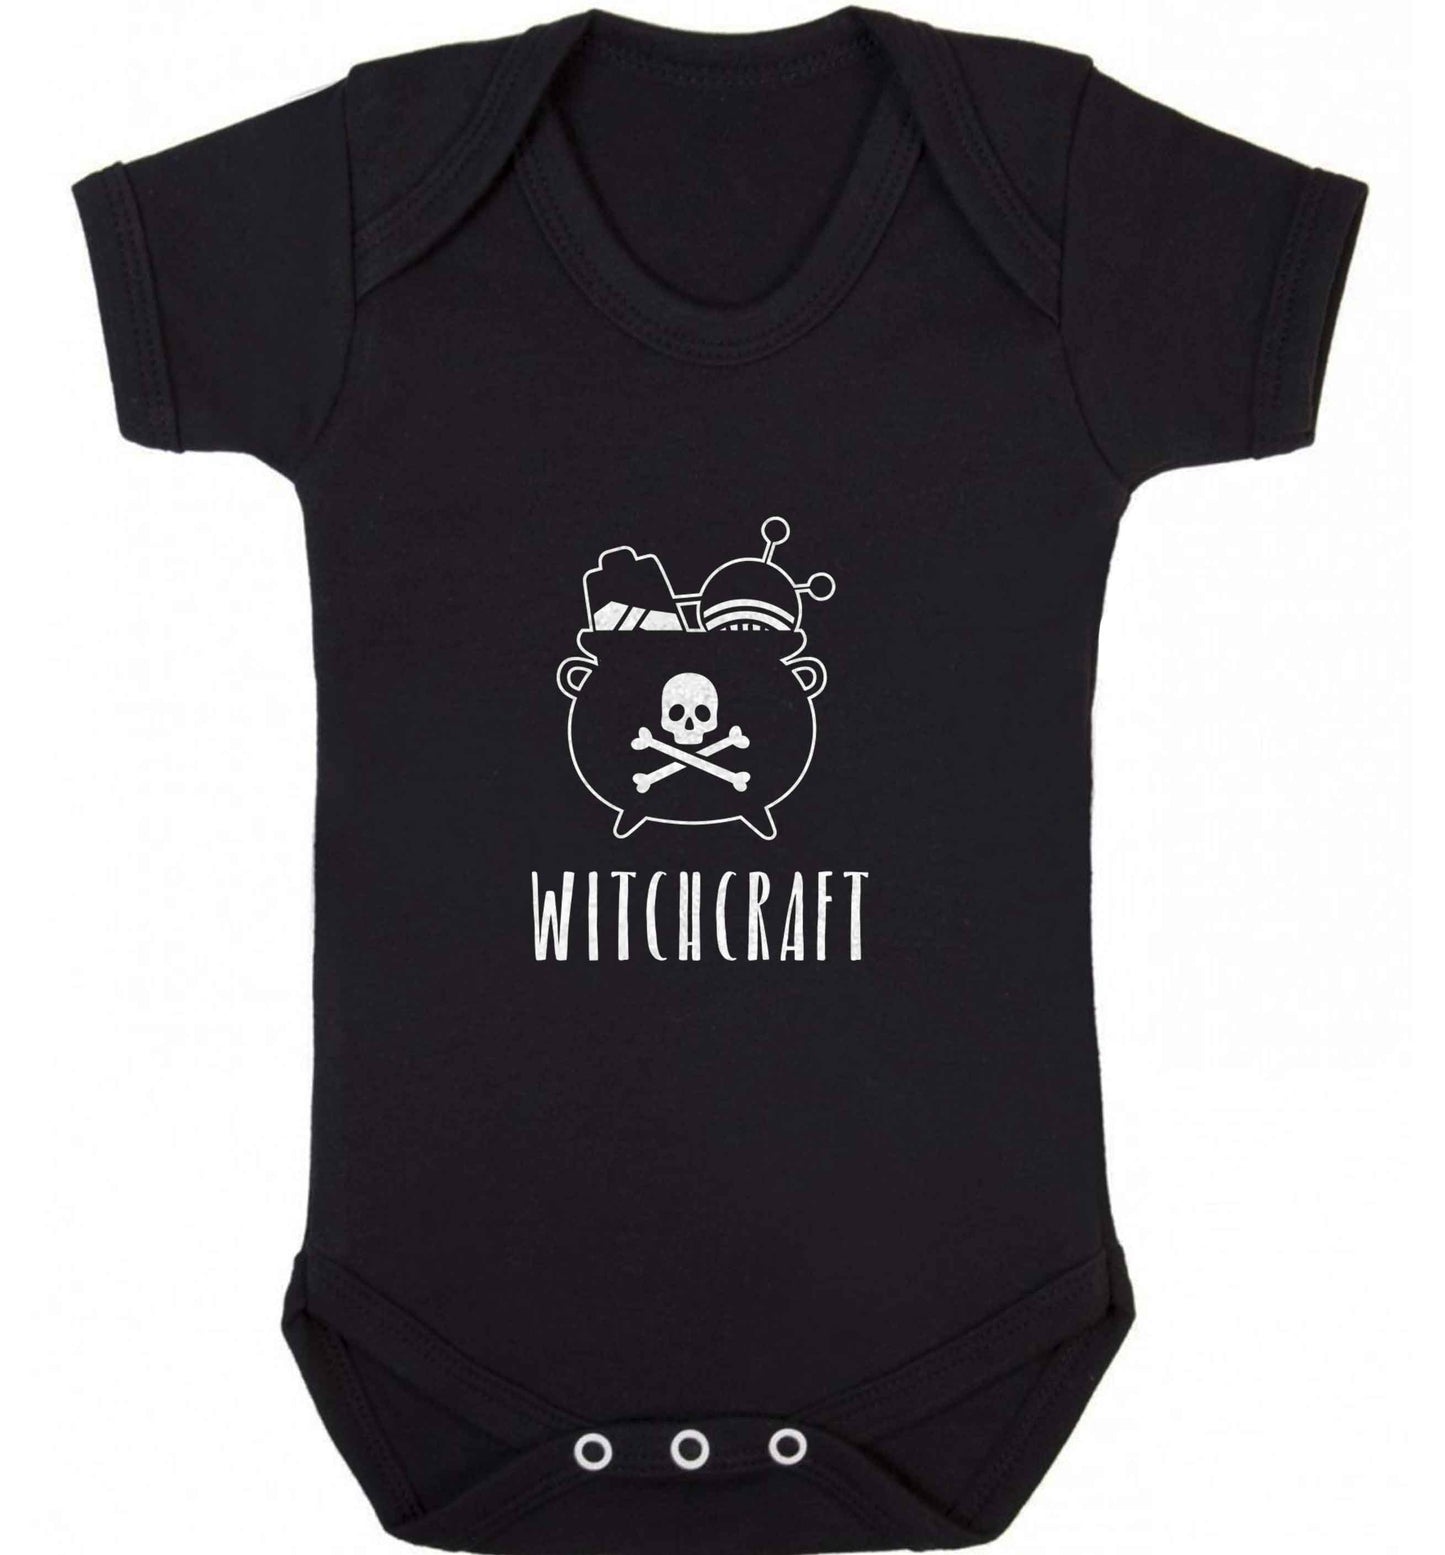 Witchcraft baby vest black 18-24 months